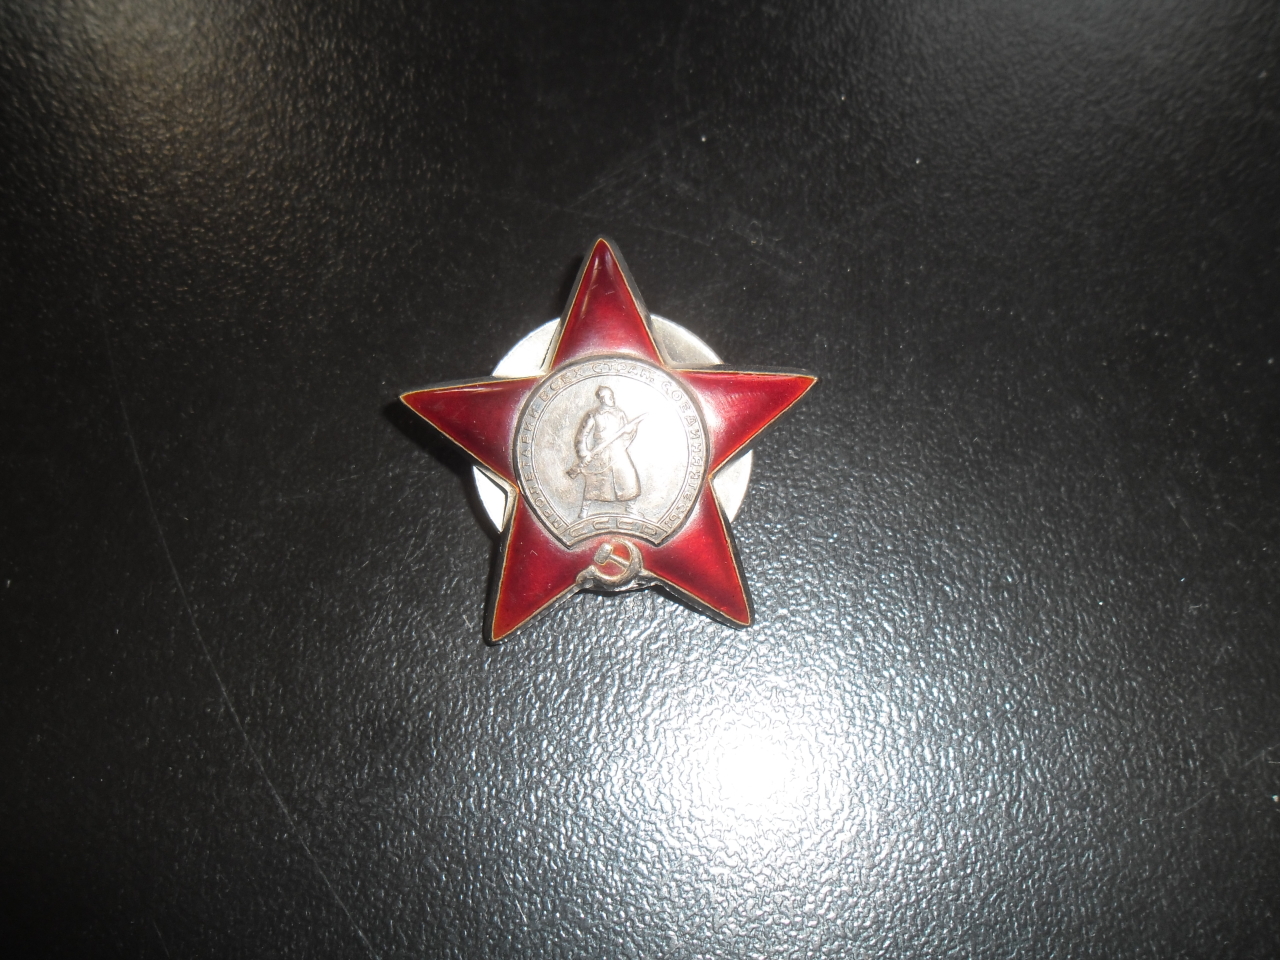 Շքանշան՝ Բաբկեն  Համազասպի Ազարյանի (Հայրենական պատերազմի մասնակից)